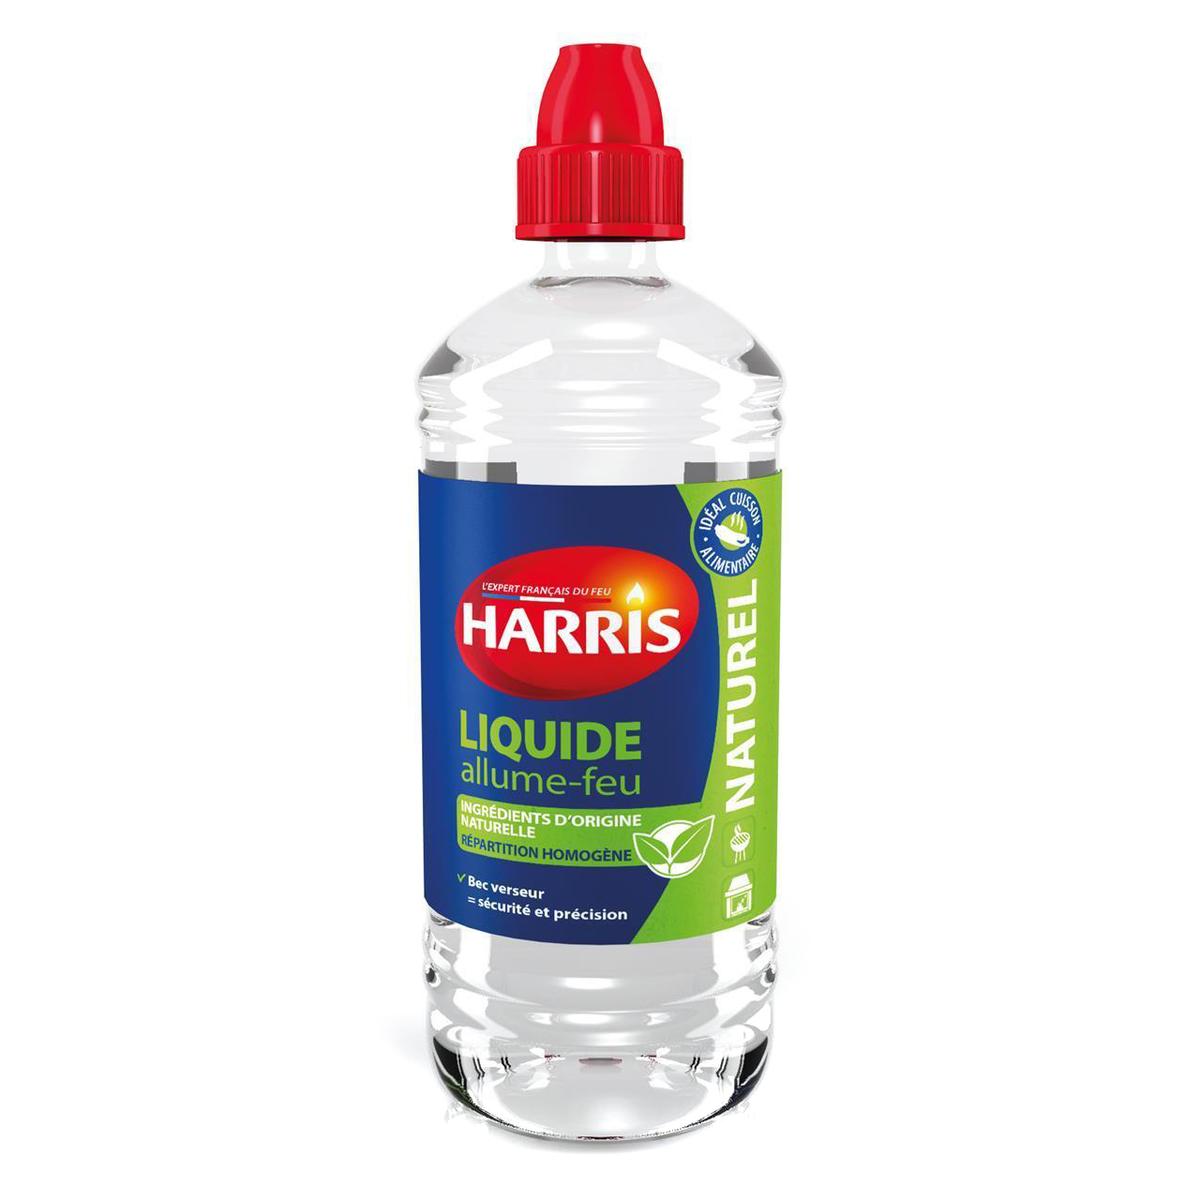 Acheter Harris Cubes allume-feu sans odeur 100% naturel, 40 pièces